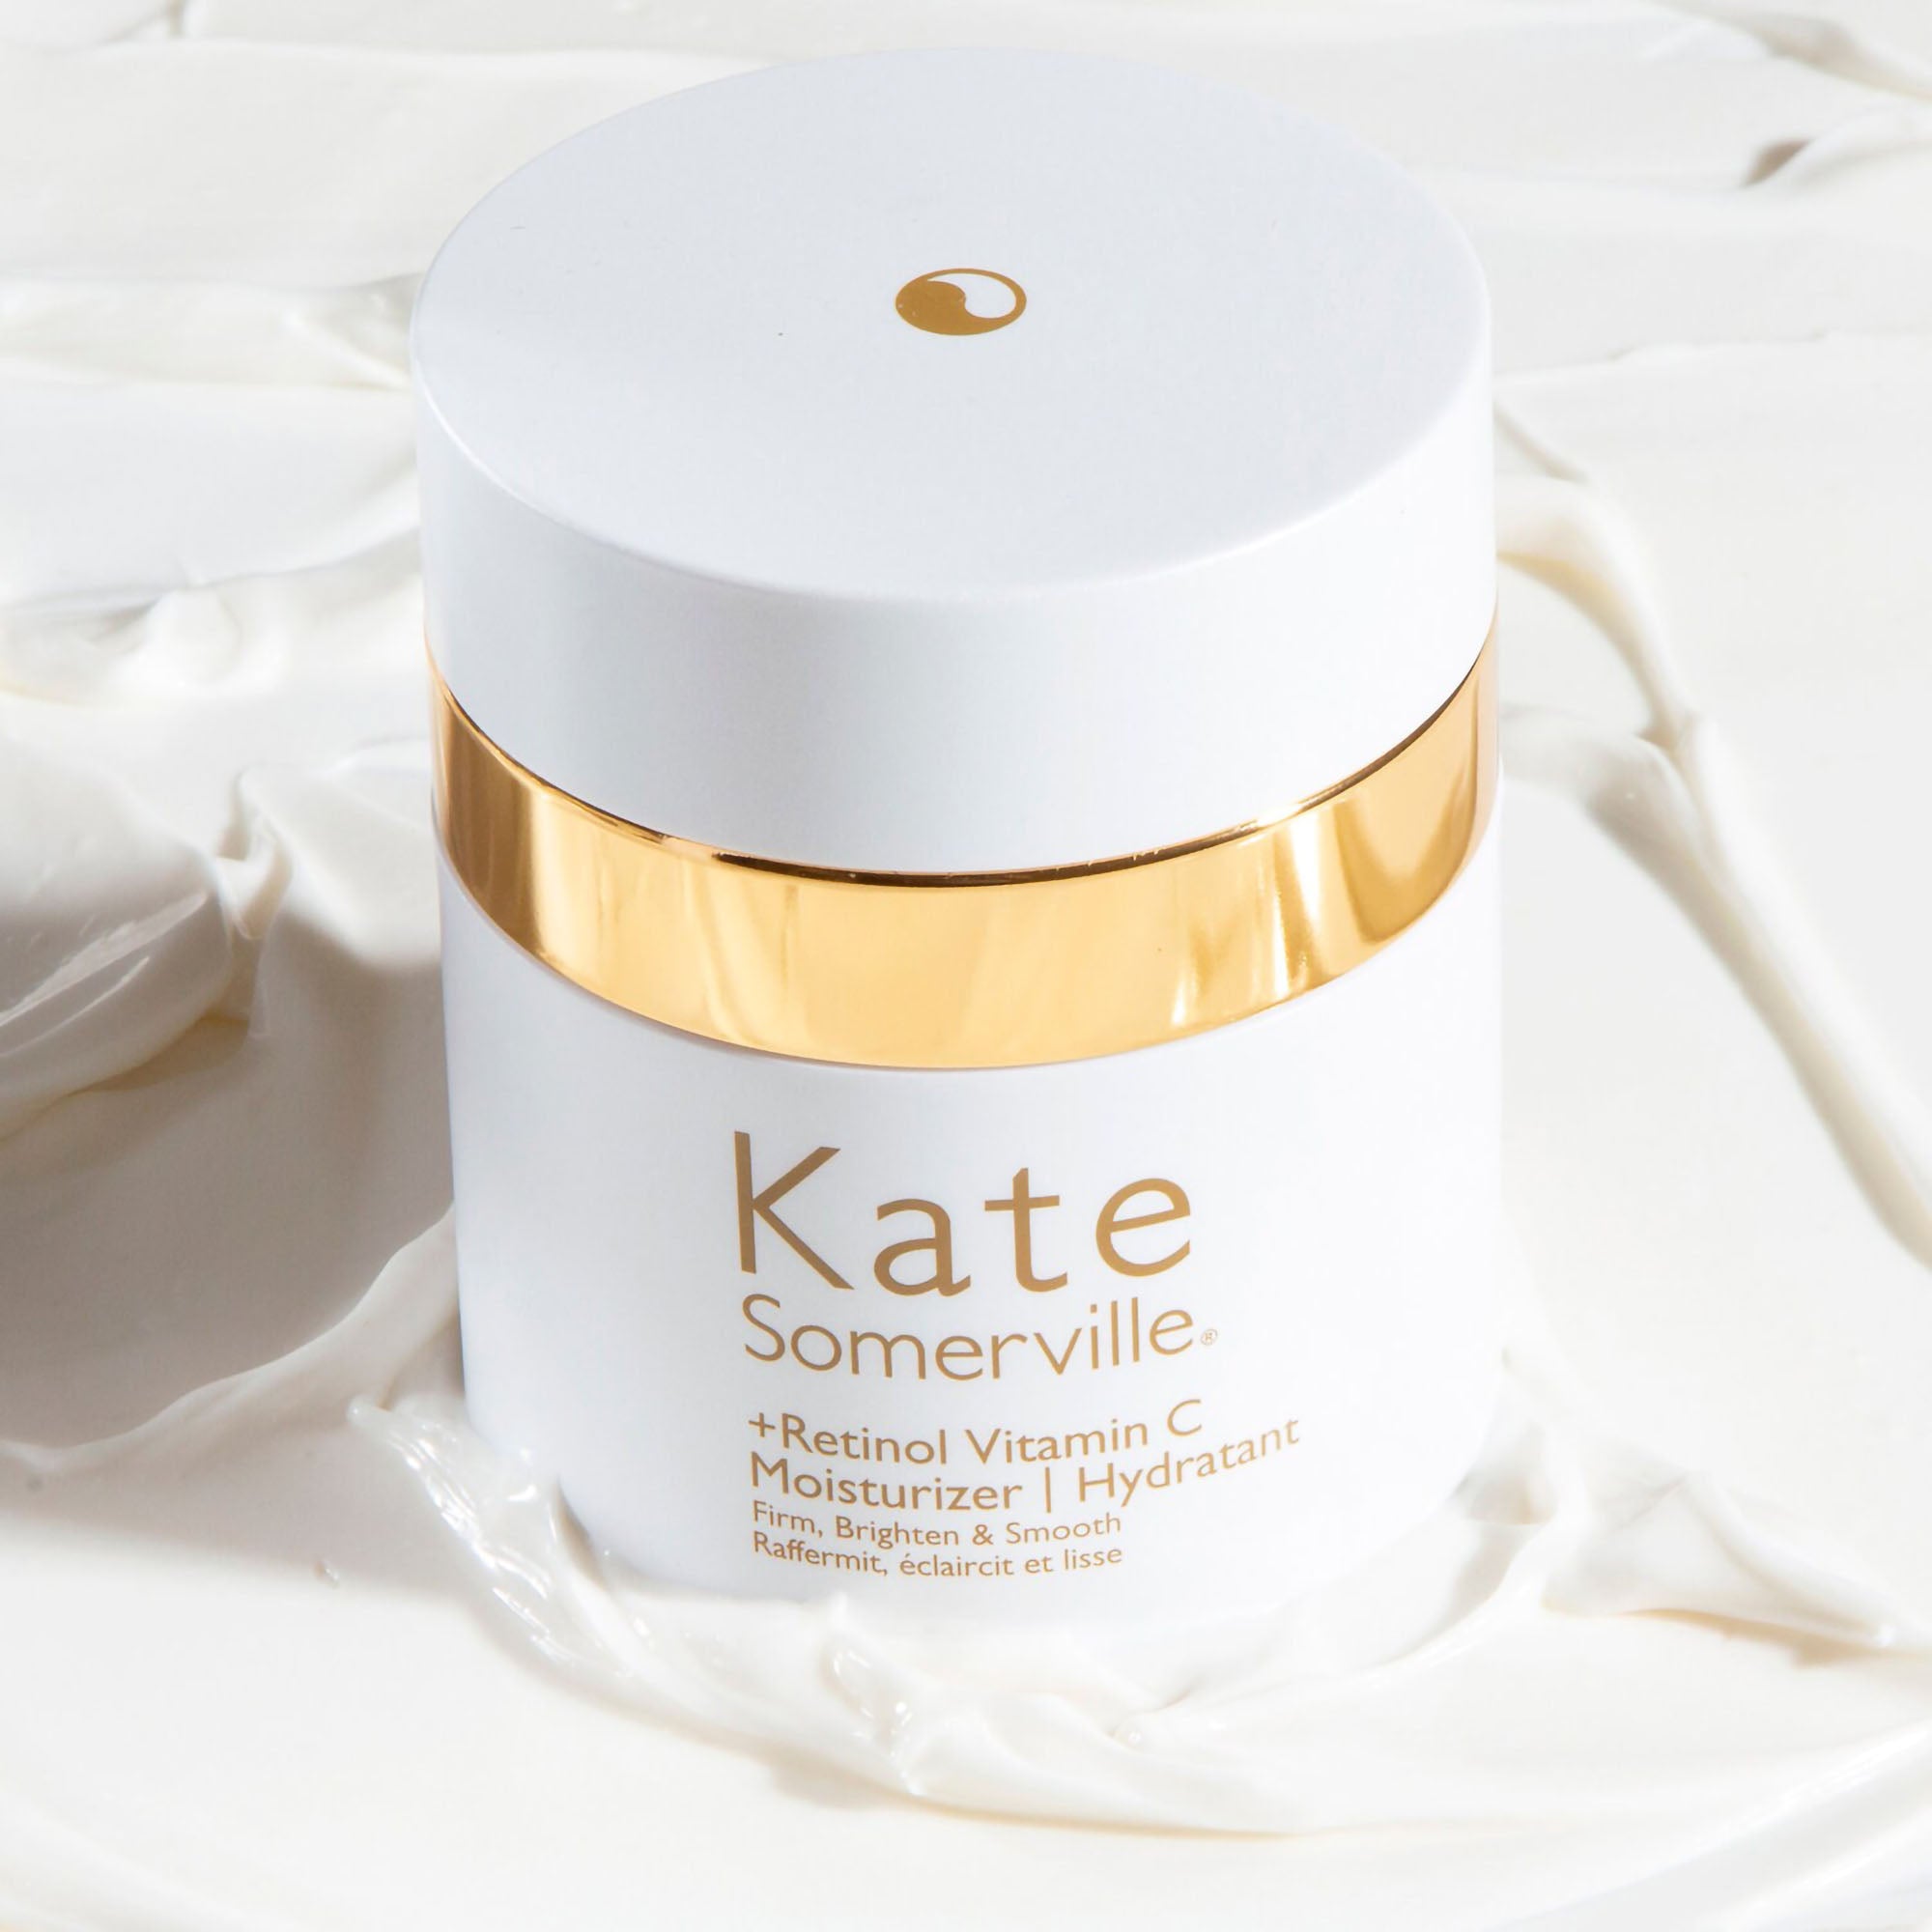 Kate Somerville +Retinol Vitamin C Moisturizer Cream / 1.7OZ